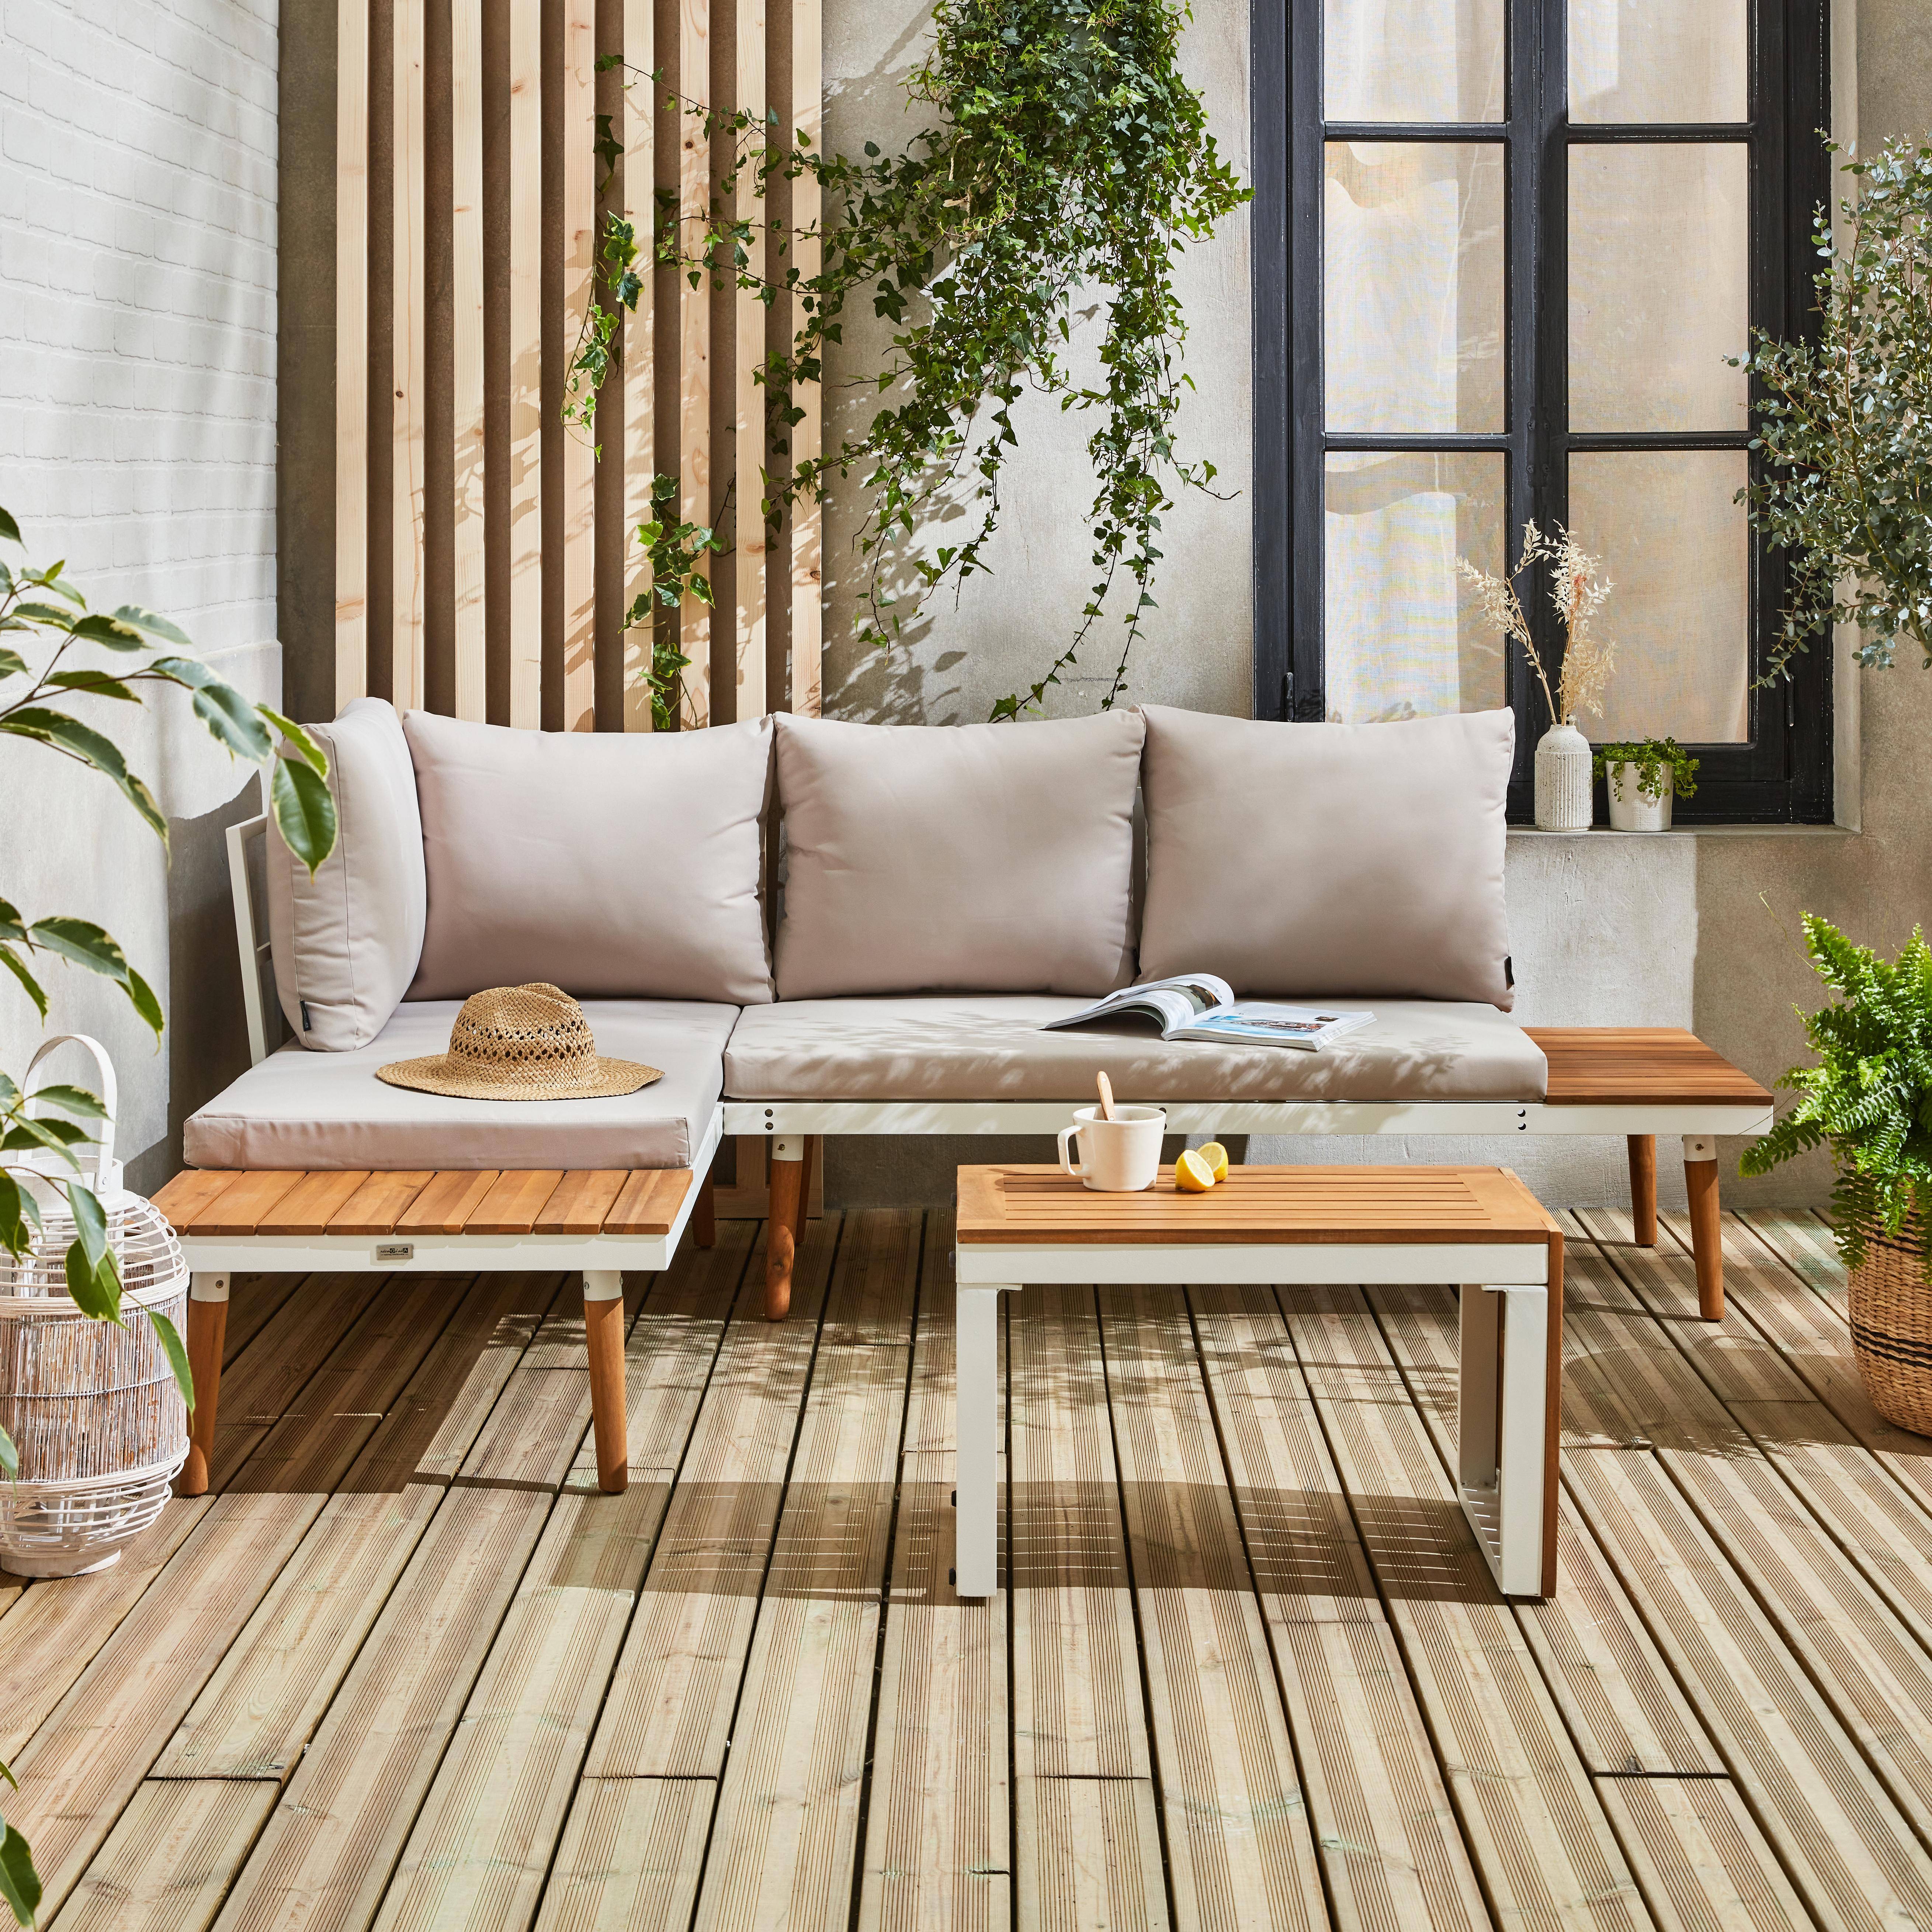 Modulares Gartenmöbelset in Weiß und Beige aus Aluminium und Akazienholz, 4 Sitzplätze, Sao Paulo, 140 x 68 x 65 cm Photo1